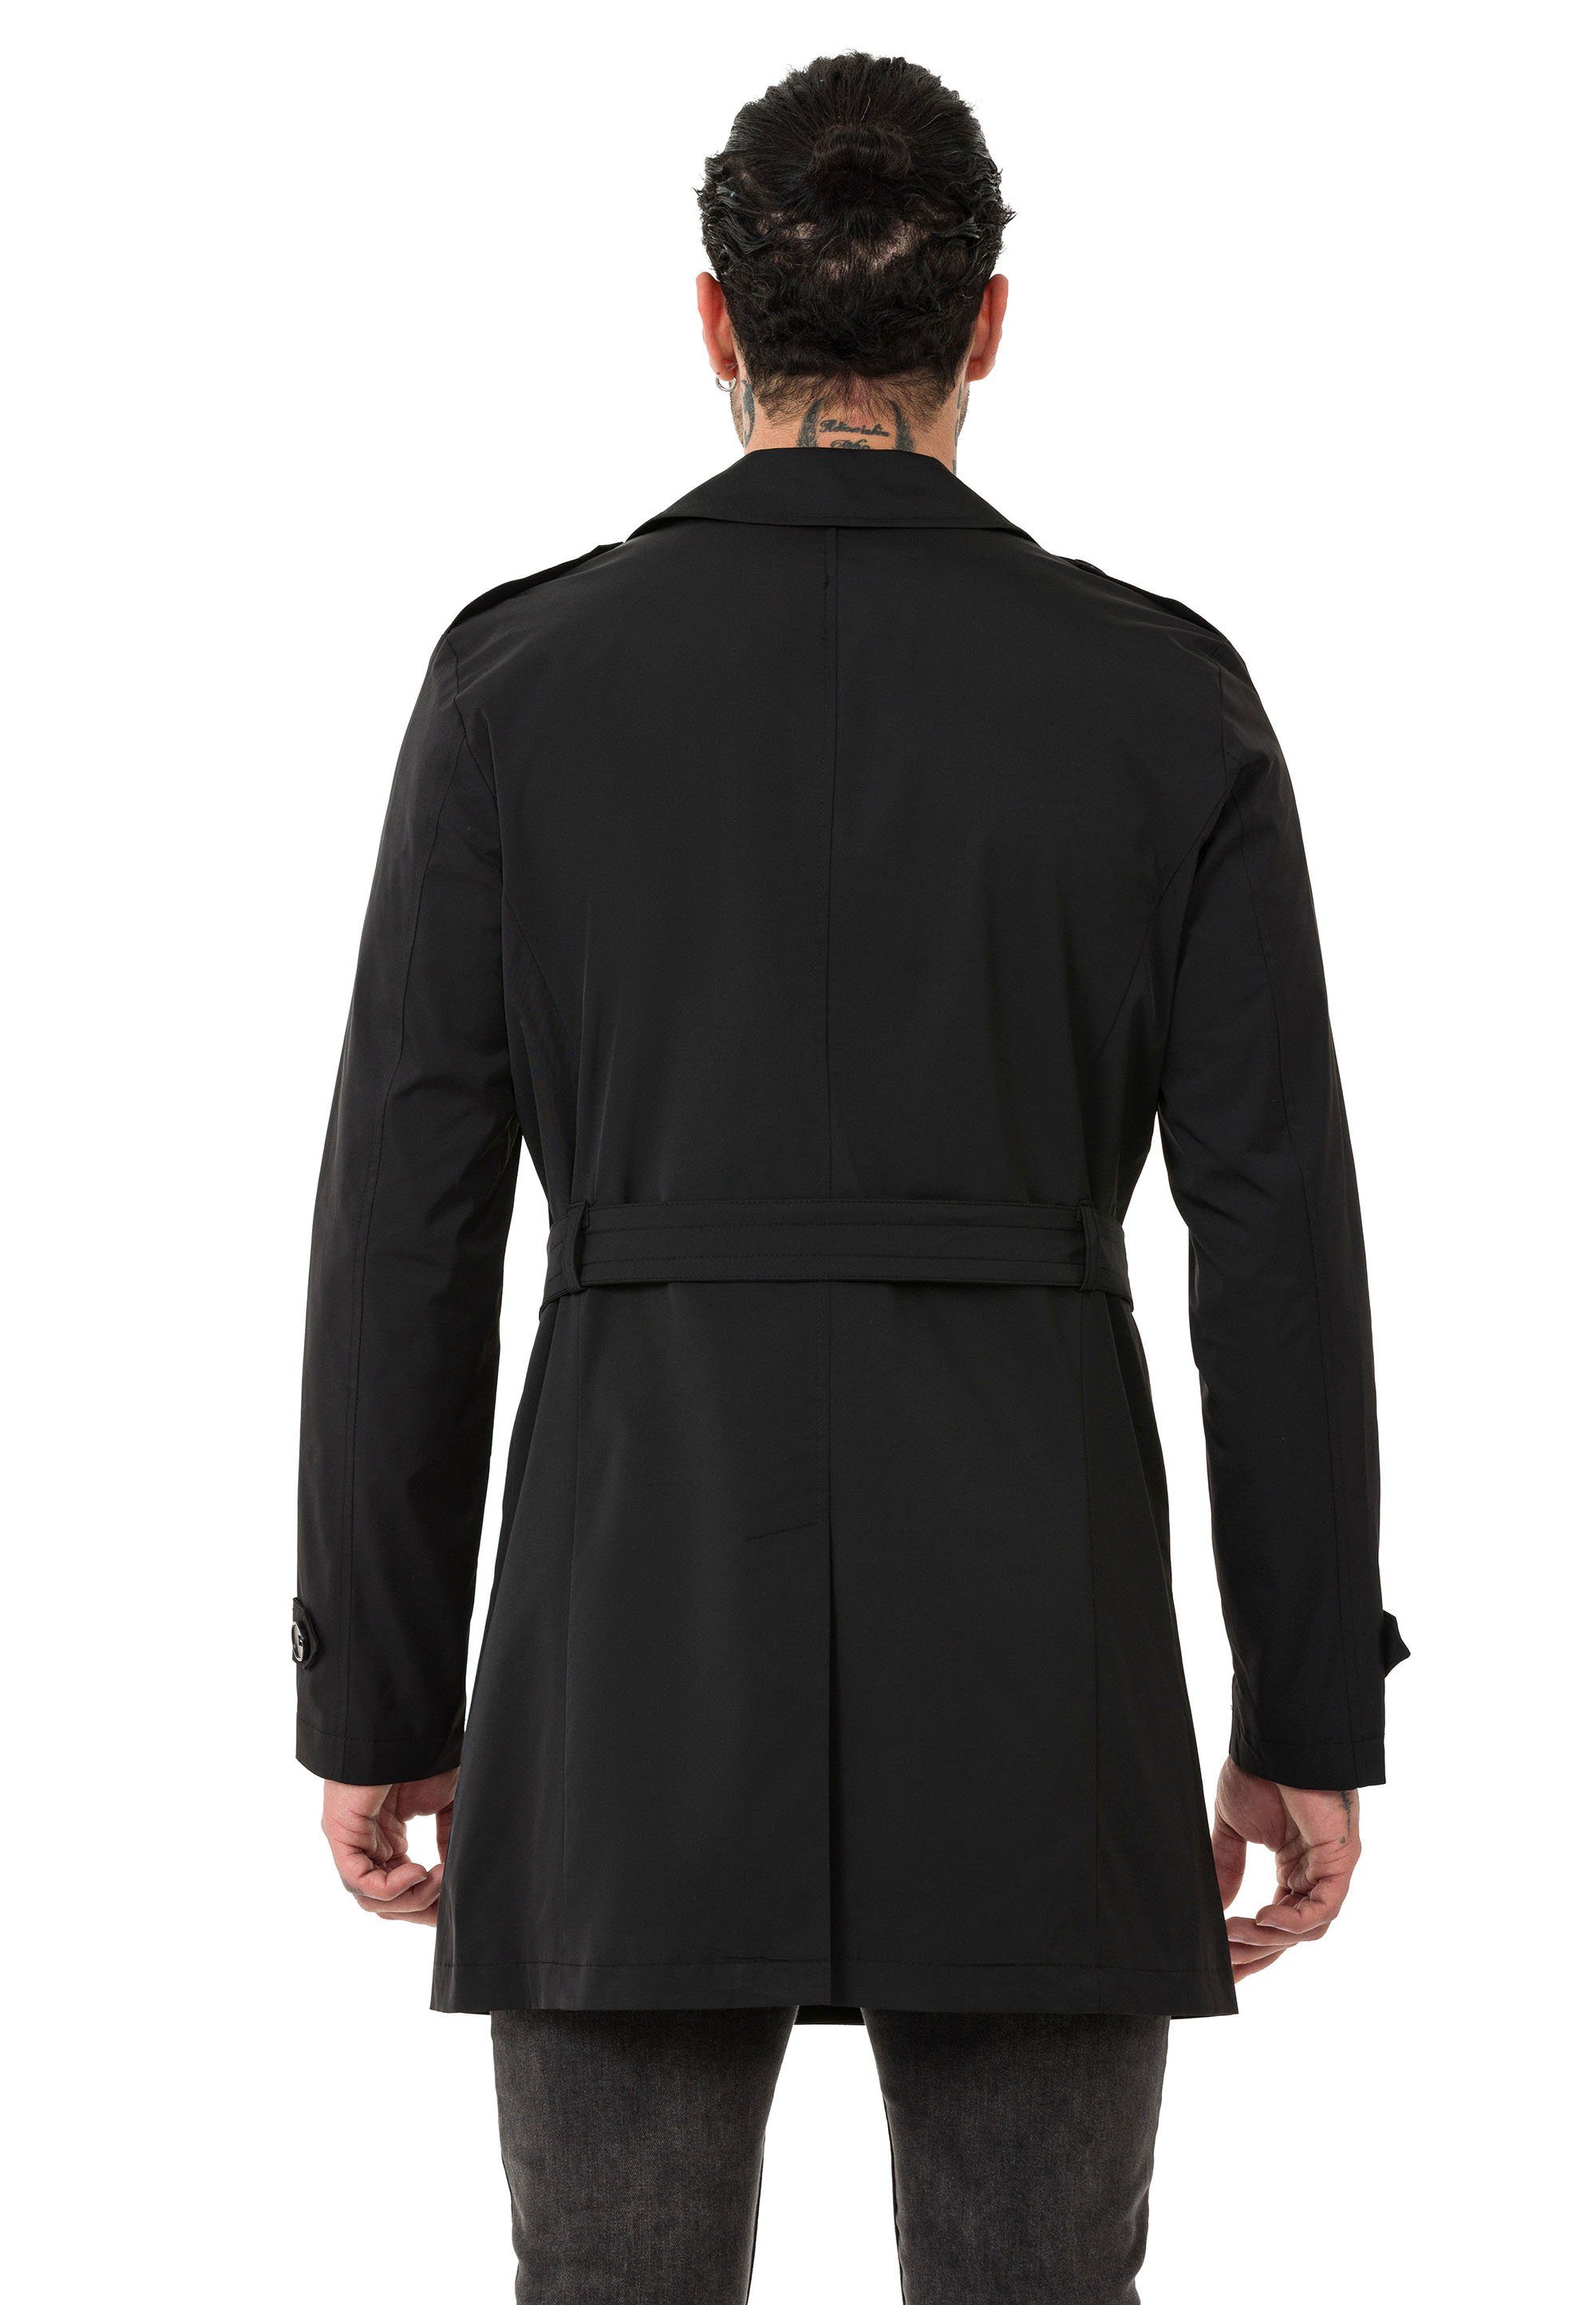 Schwarz mit Trenchcoat Qualität Mantel Gürtelschnalle RedBridge Premium